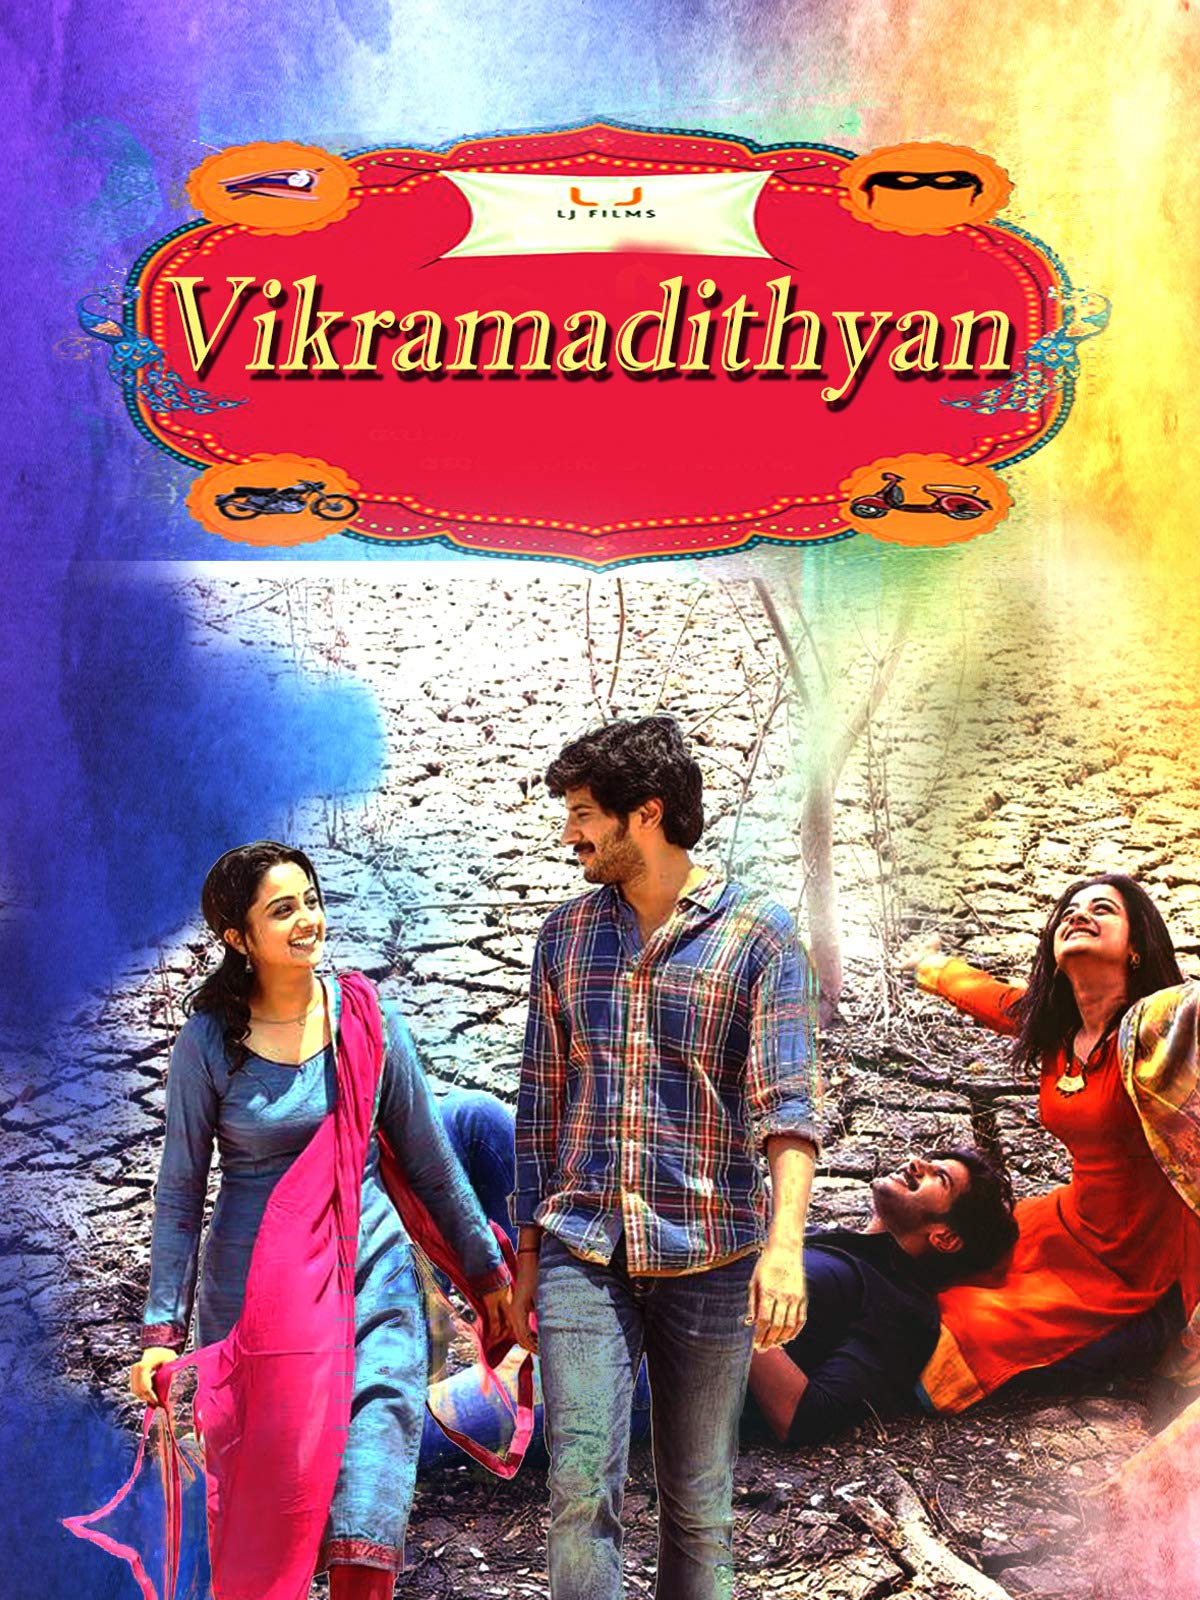 vikramadithyan malayalam movie download